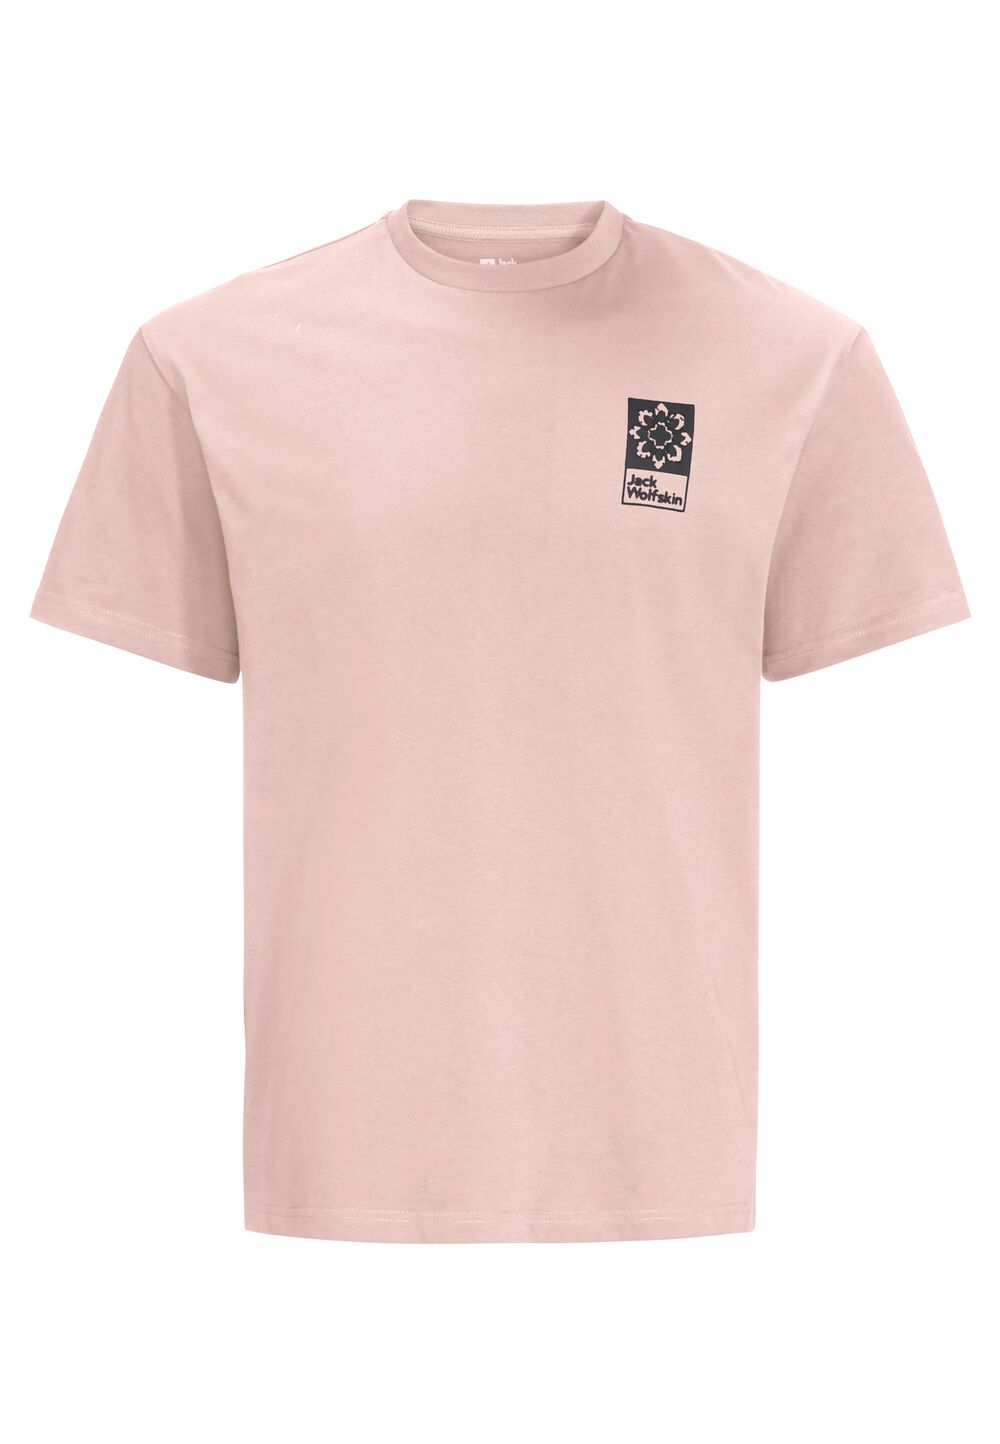 Jack Wolfskin Unisex T-shirt aus Bio-Baumwolle Eschenheimer Back T-Shirt S rose smoke rose smoke von Jack Wolfskin